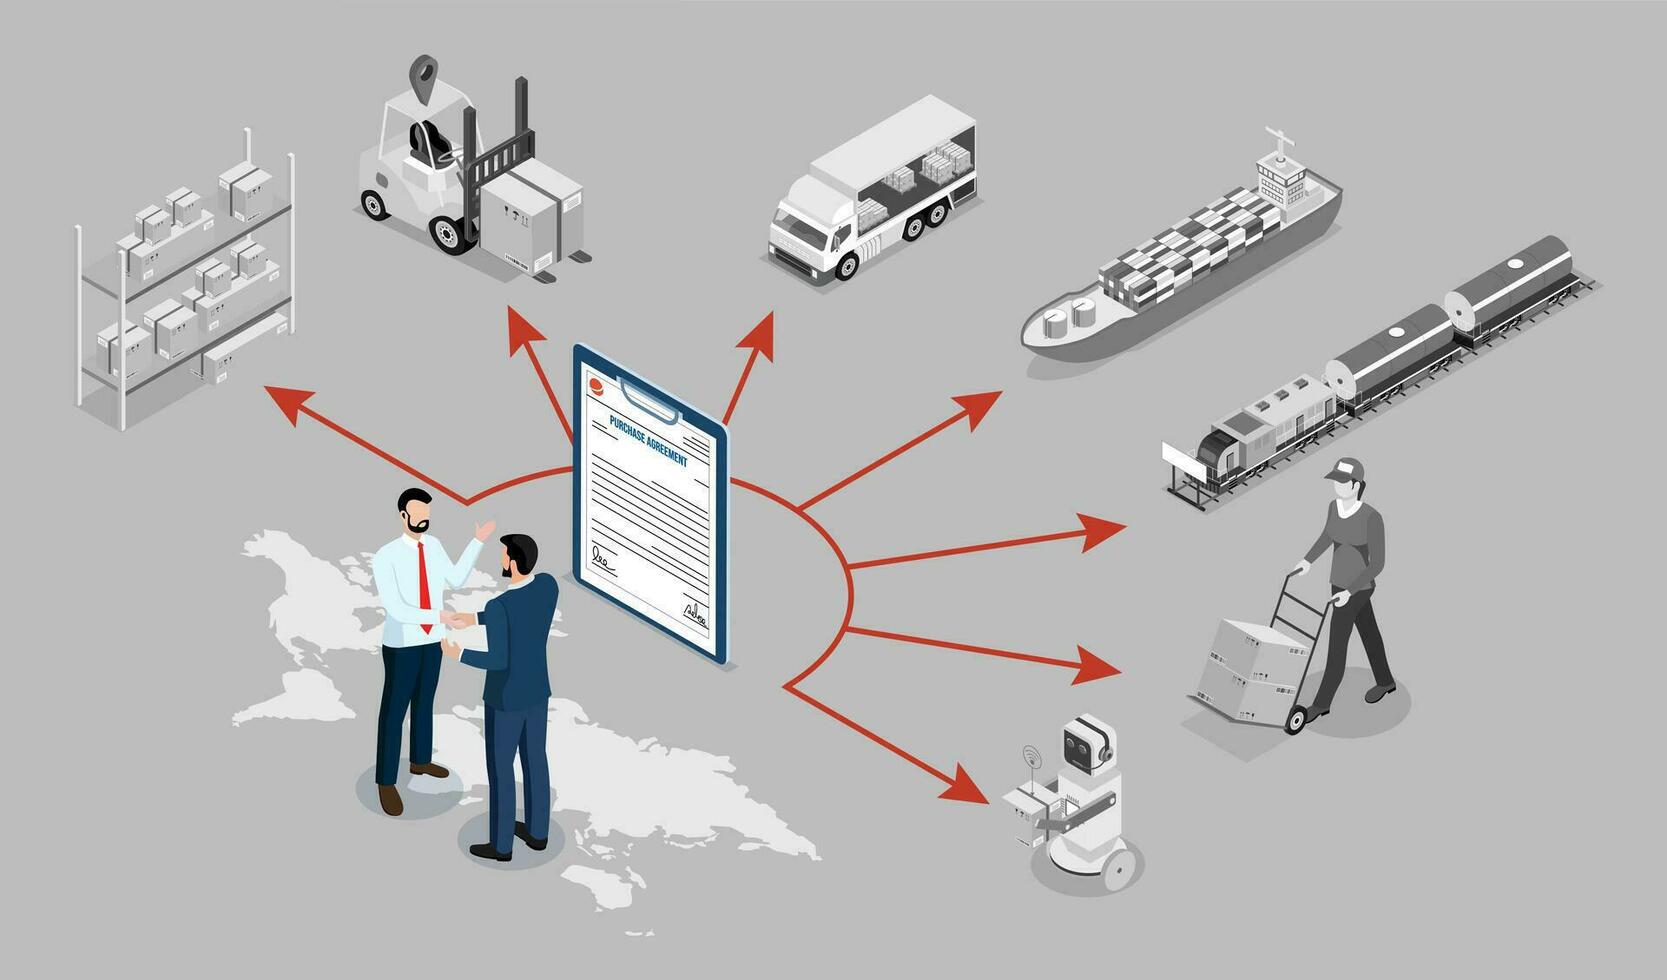 3d isometrisch global Logistik Netzwerk Konzept mit Transport Betrieb Service, liefern Kette Verwaltung - - scm, Unternehmen Logistik Prozesse. Vektor Illustration eps 10